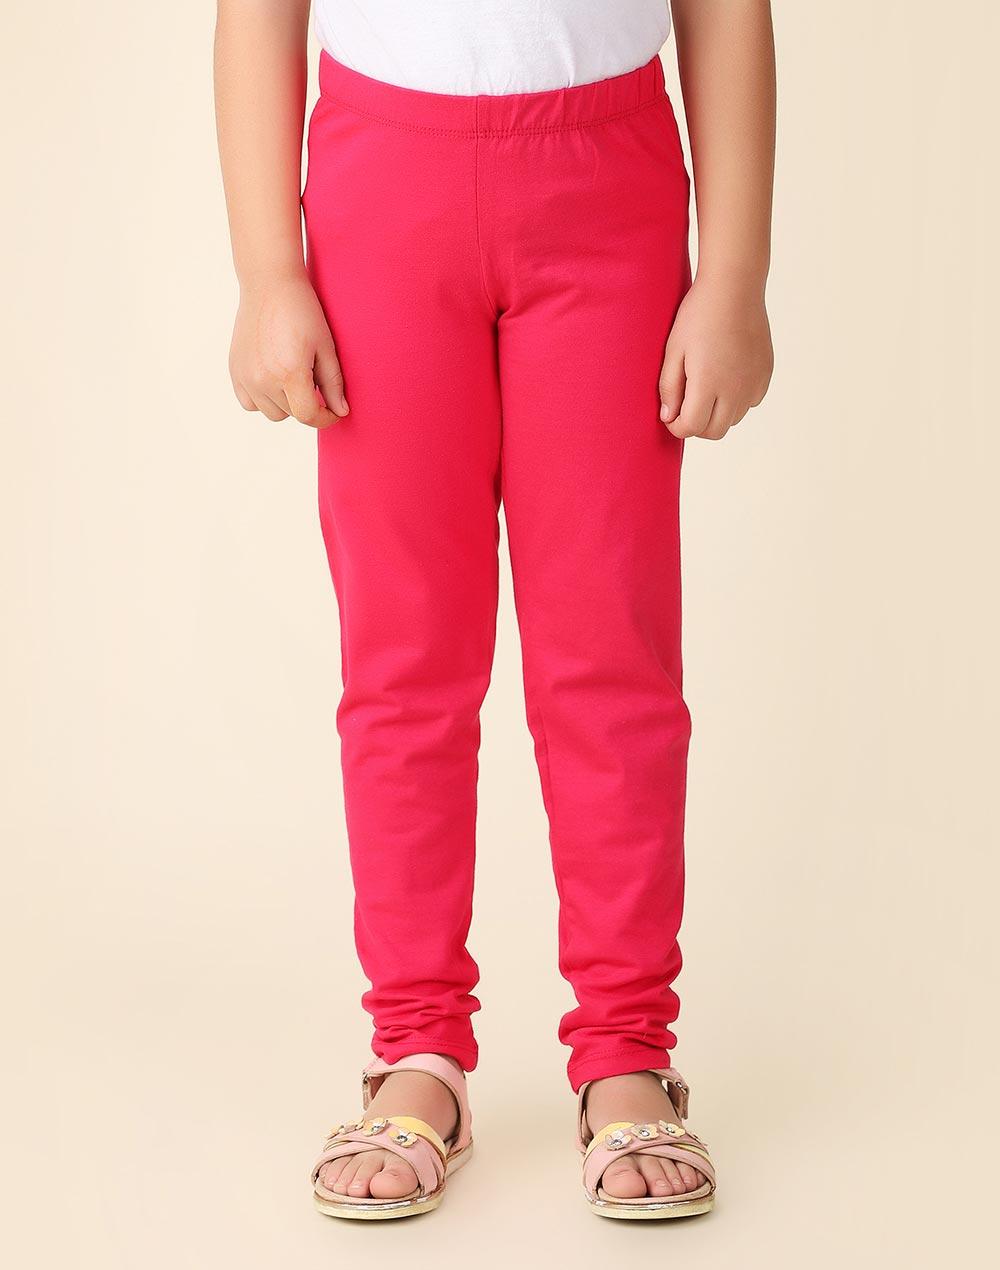 pink cotton leggings